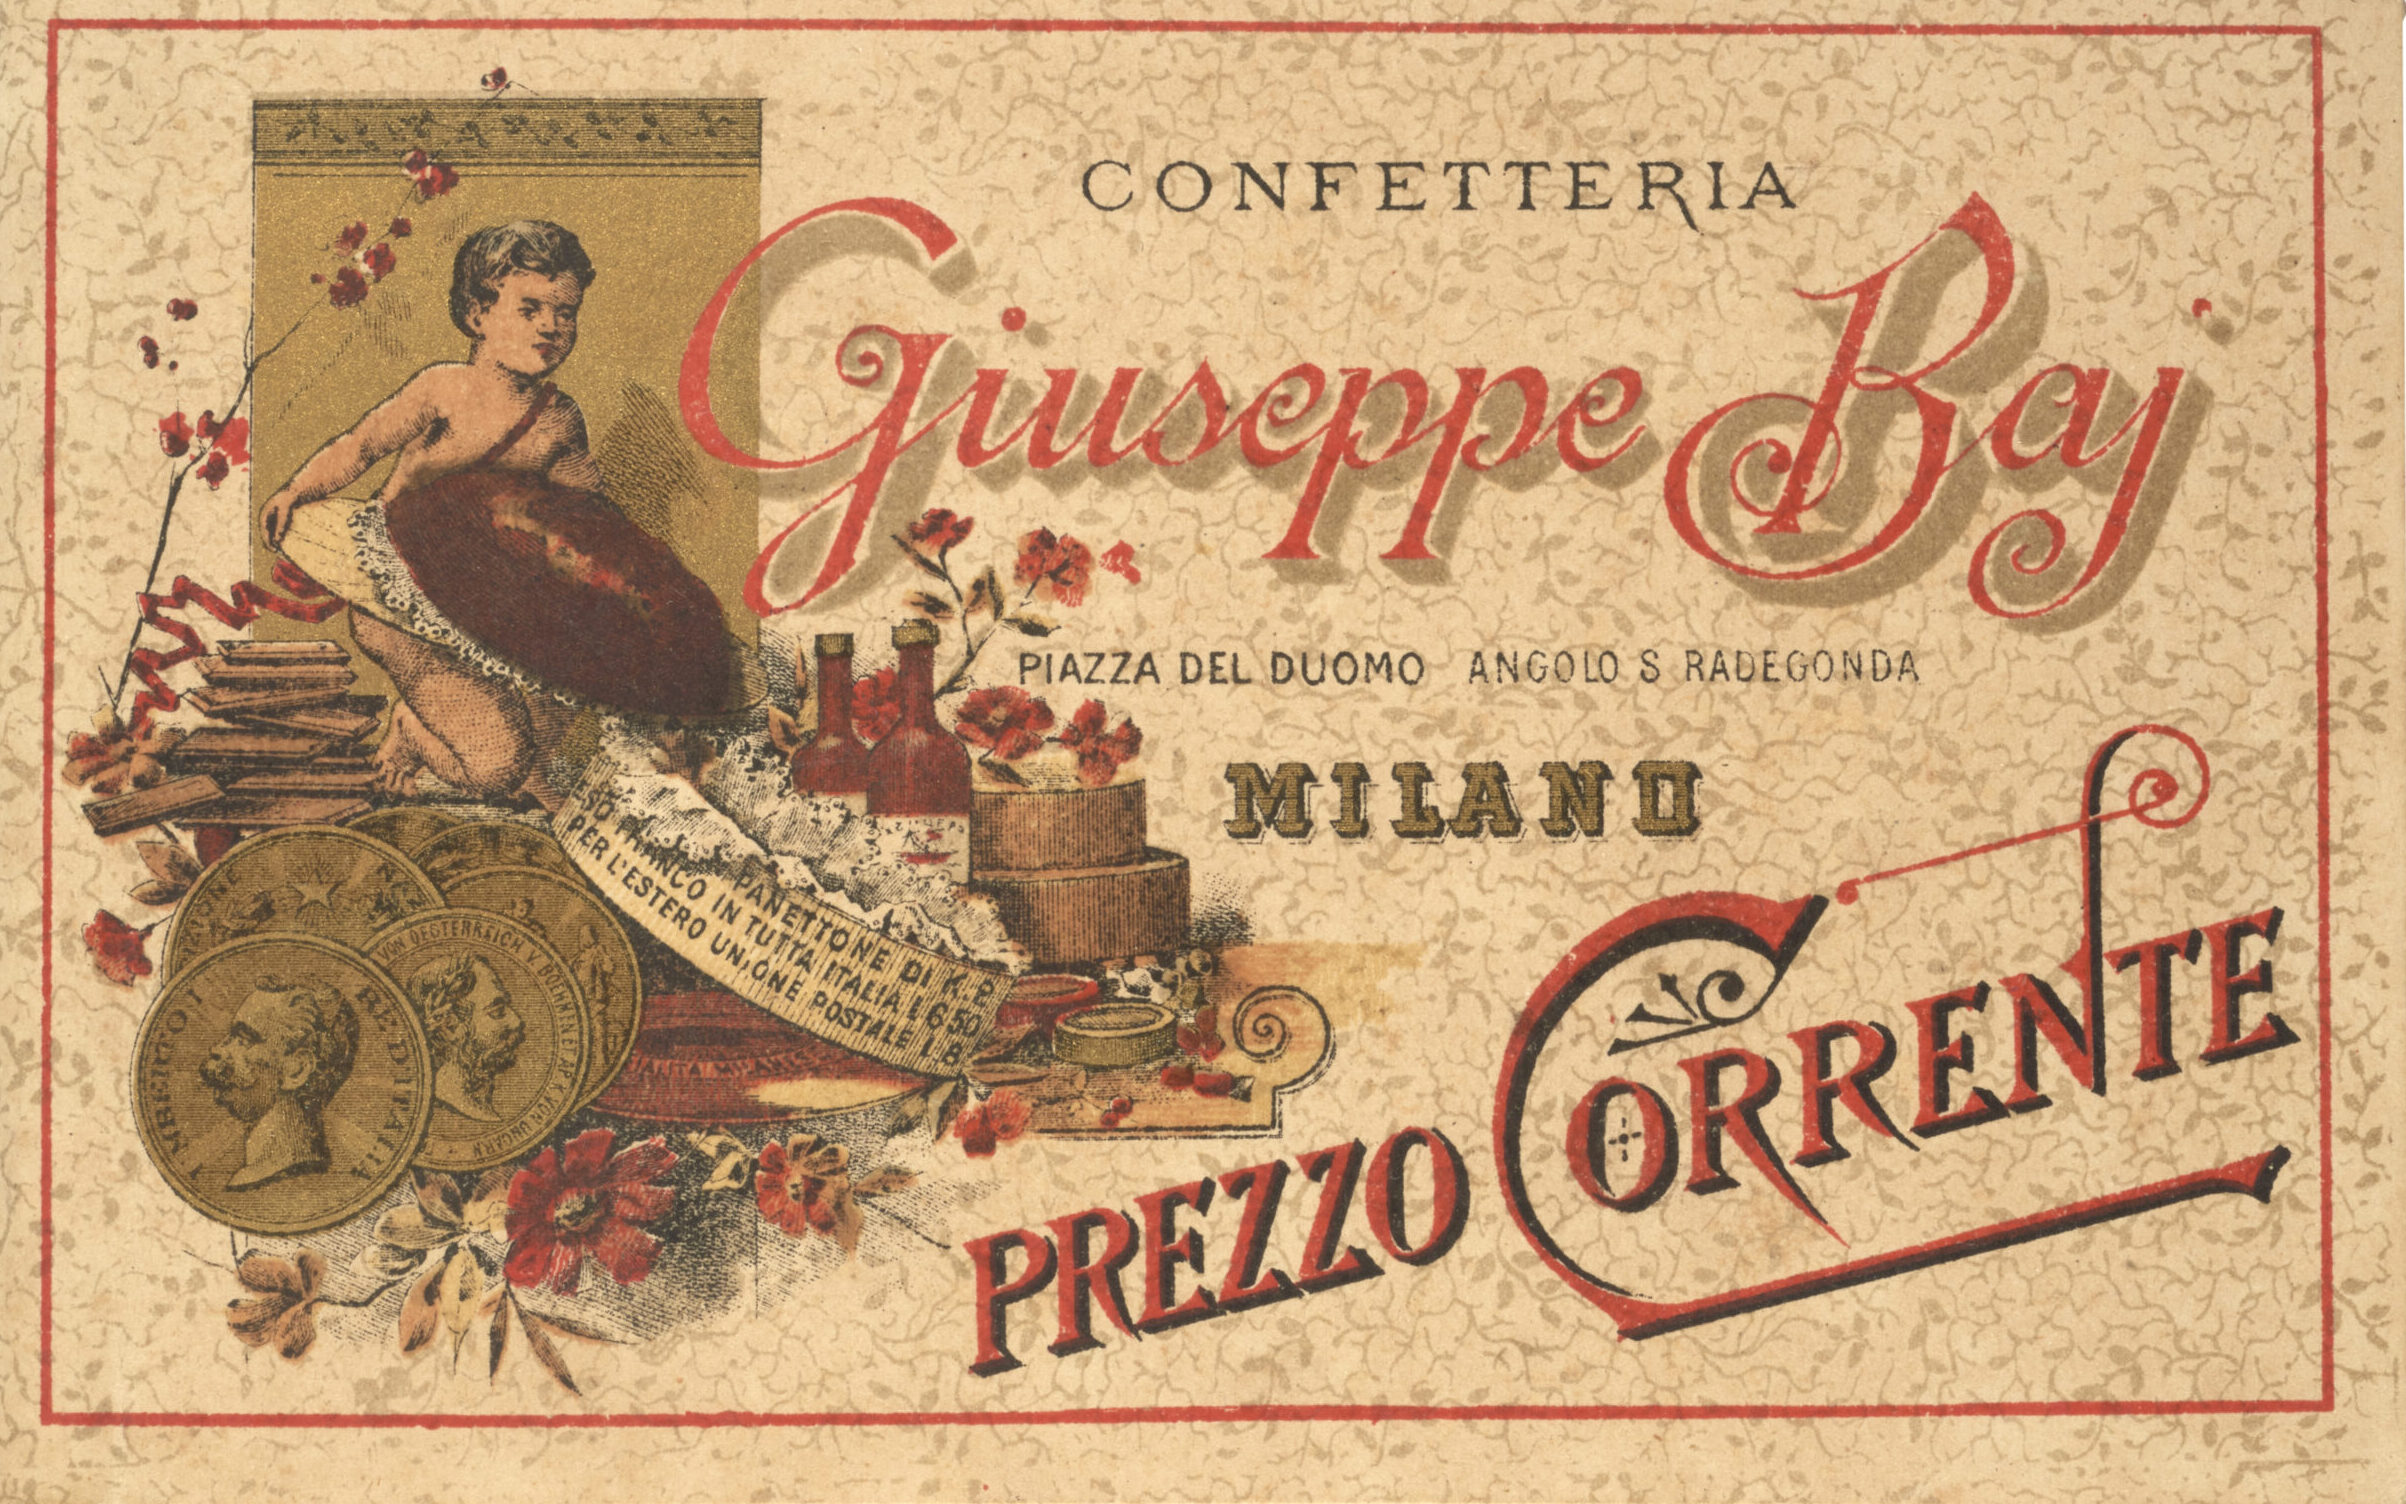 Libretto Confetteria Giuseppe Baj - Piazza del Duomo Angolo S. Radegonda Milano